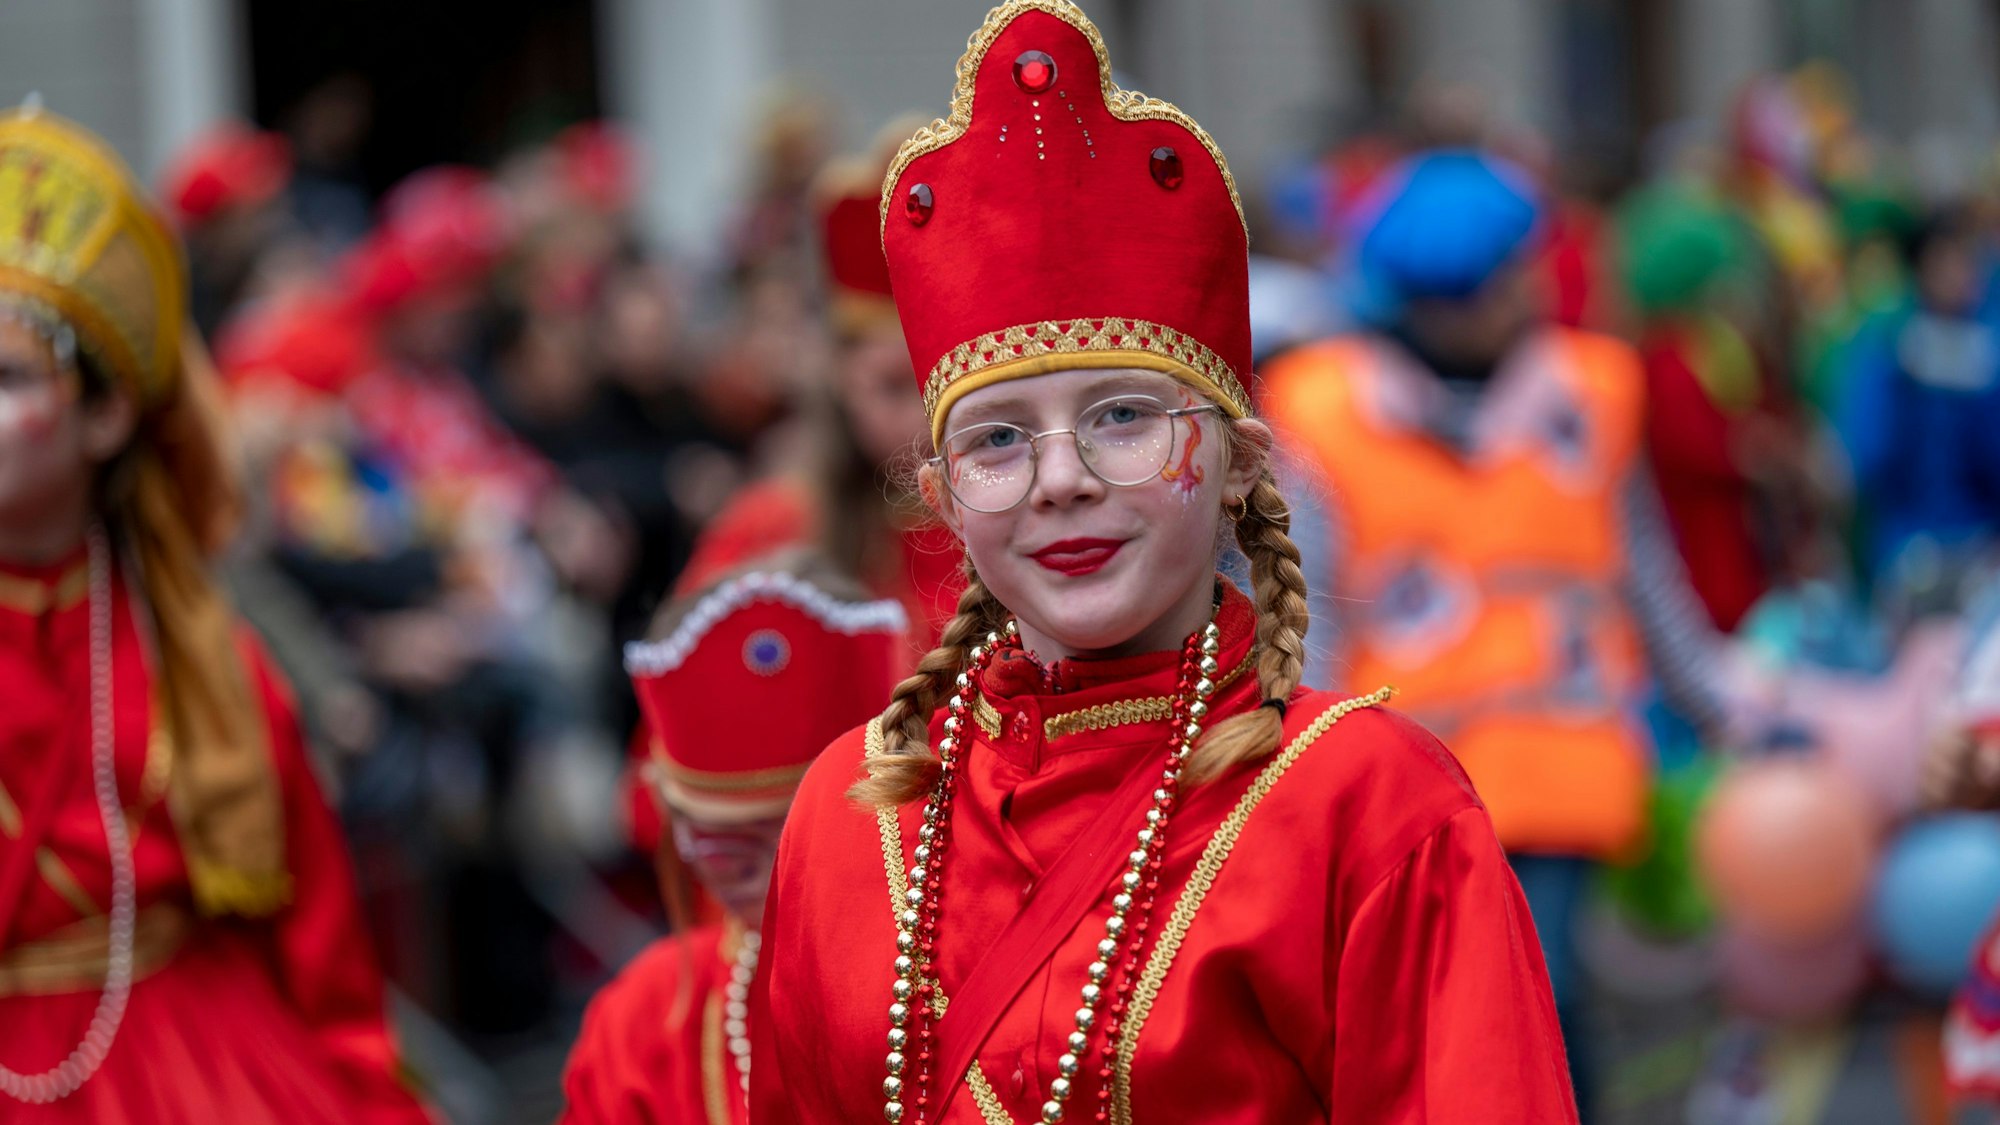 Mit bis zu 100 Personen pro Gruppe ziehen die Schull- un Veedelzöch am Karnevalssonntag von der Sverinstorburg aus auf dem Zugweg des Rosenmontagszuges durch die Stadt.